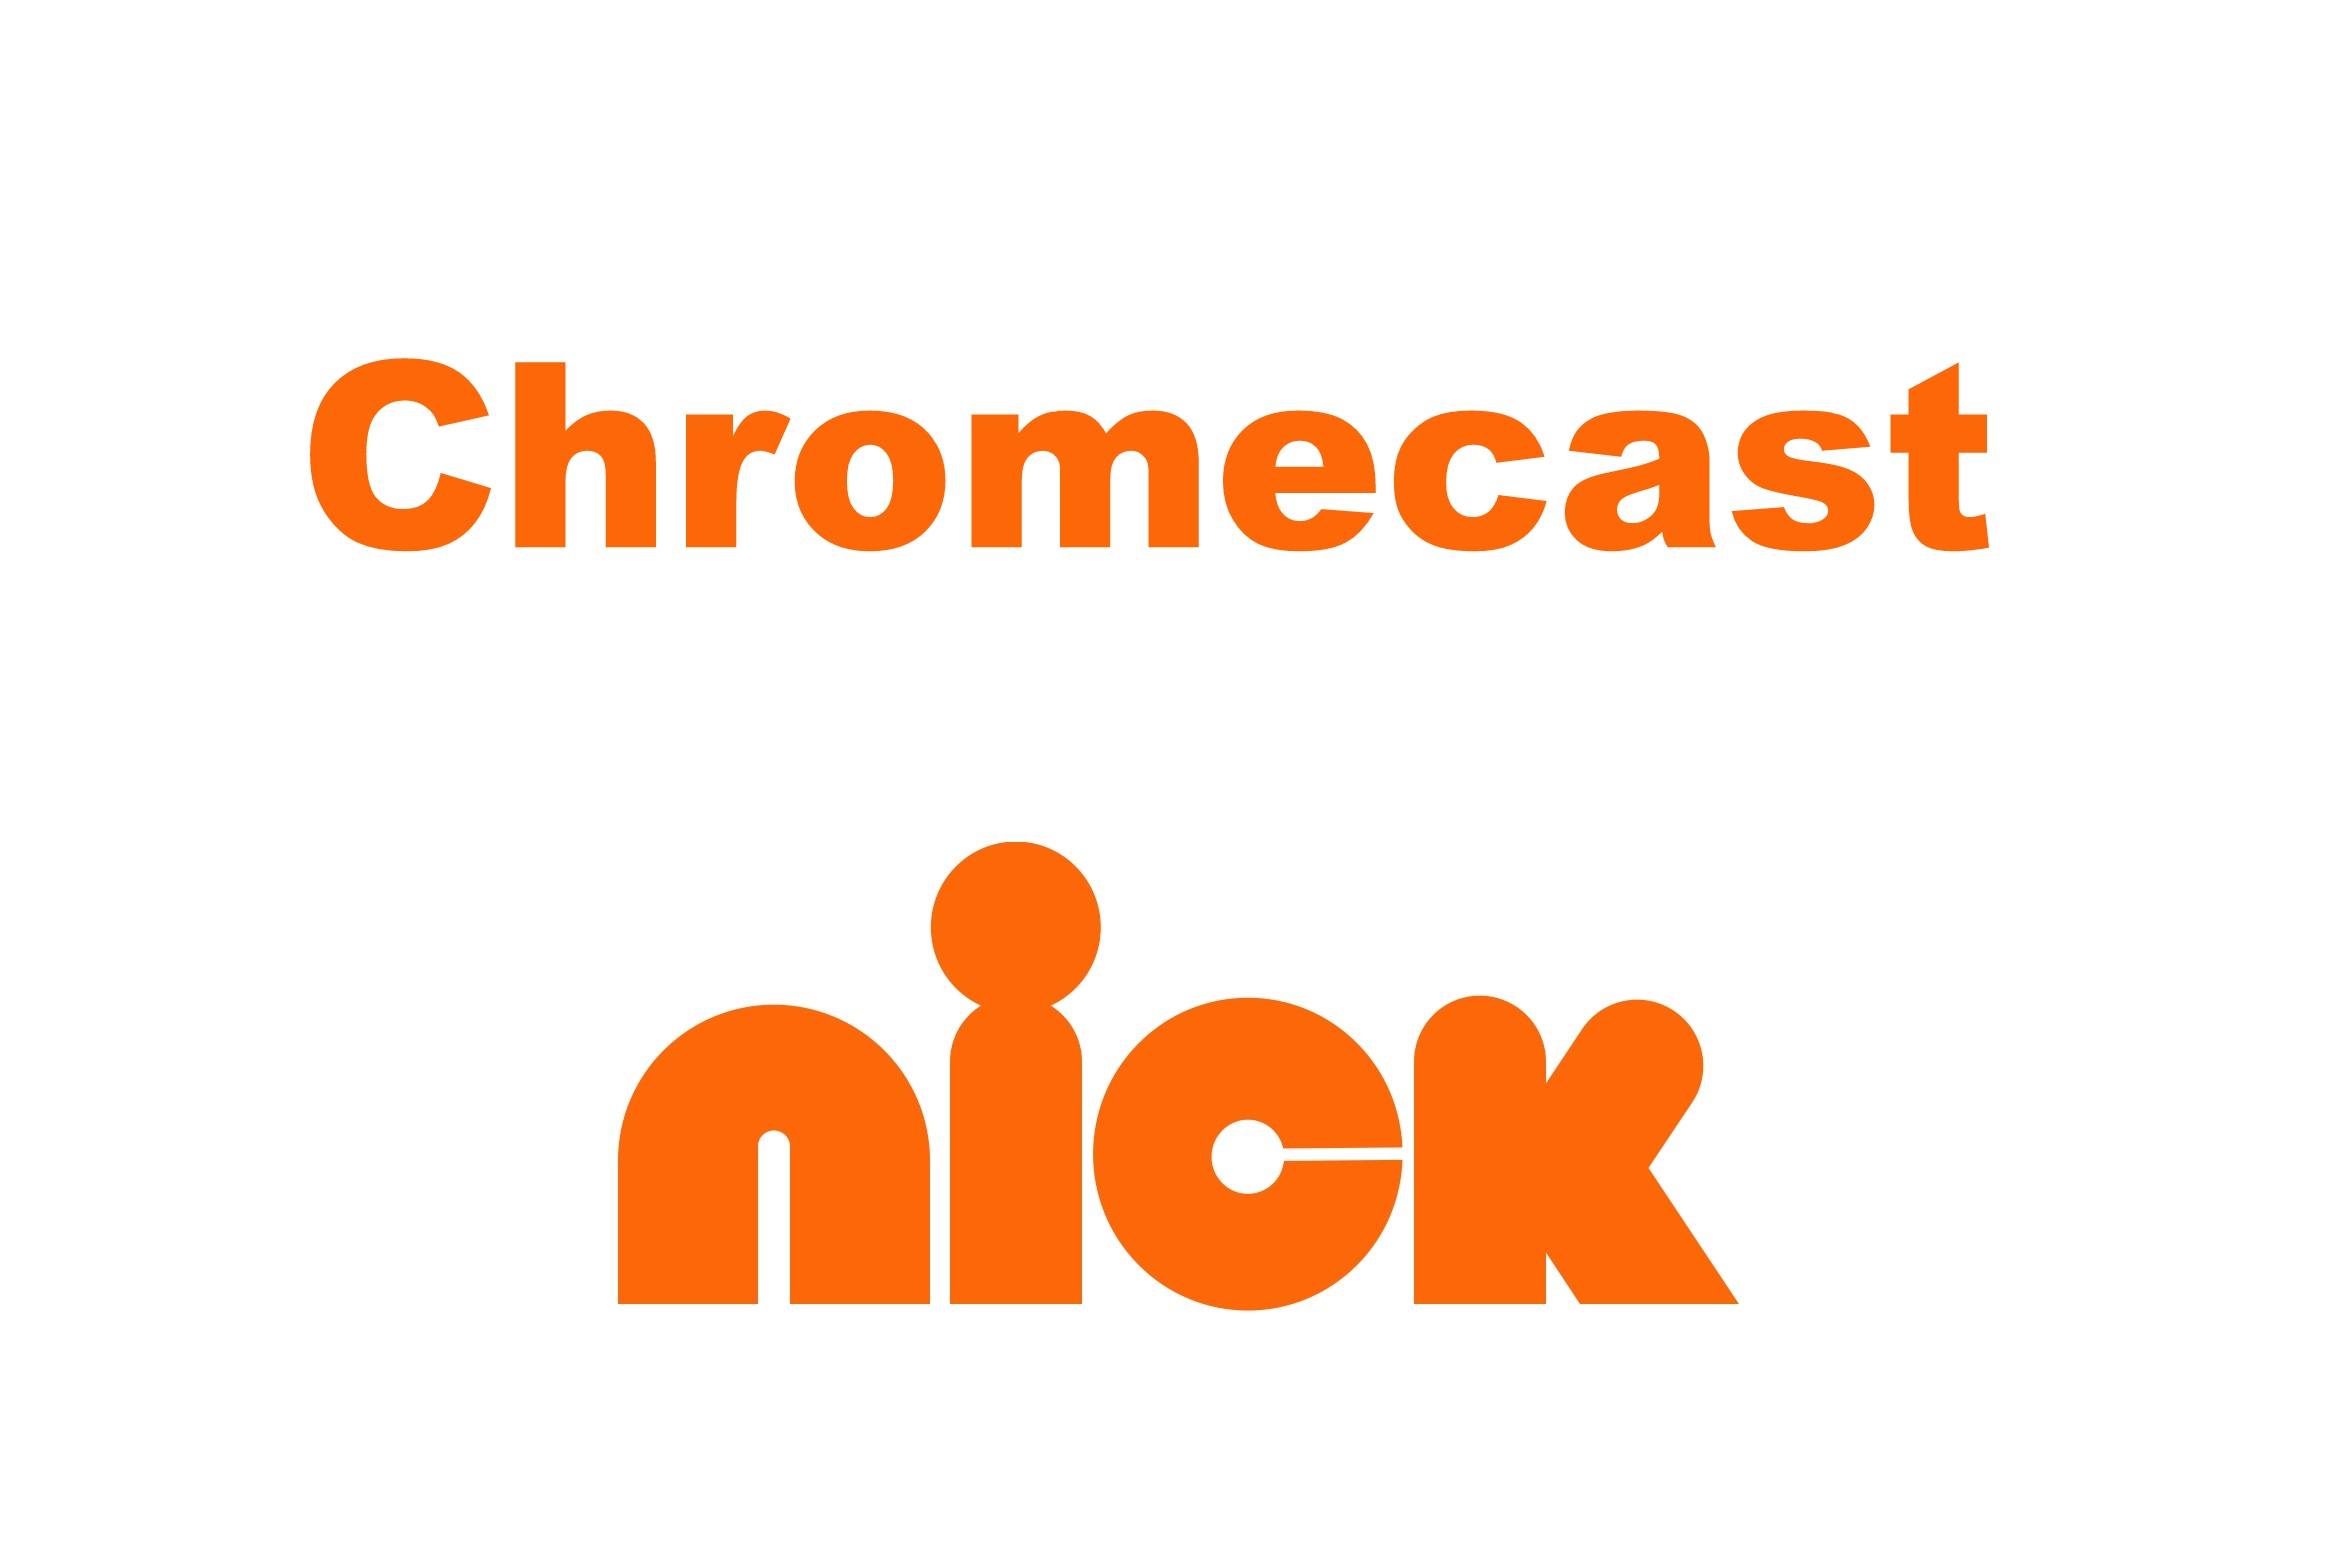 Chromecast Nick